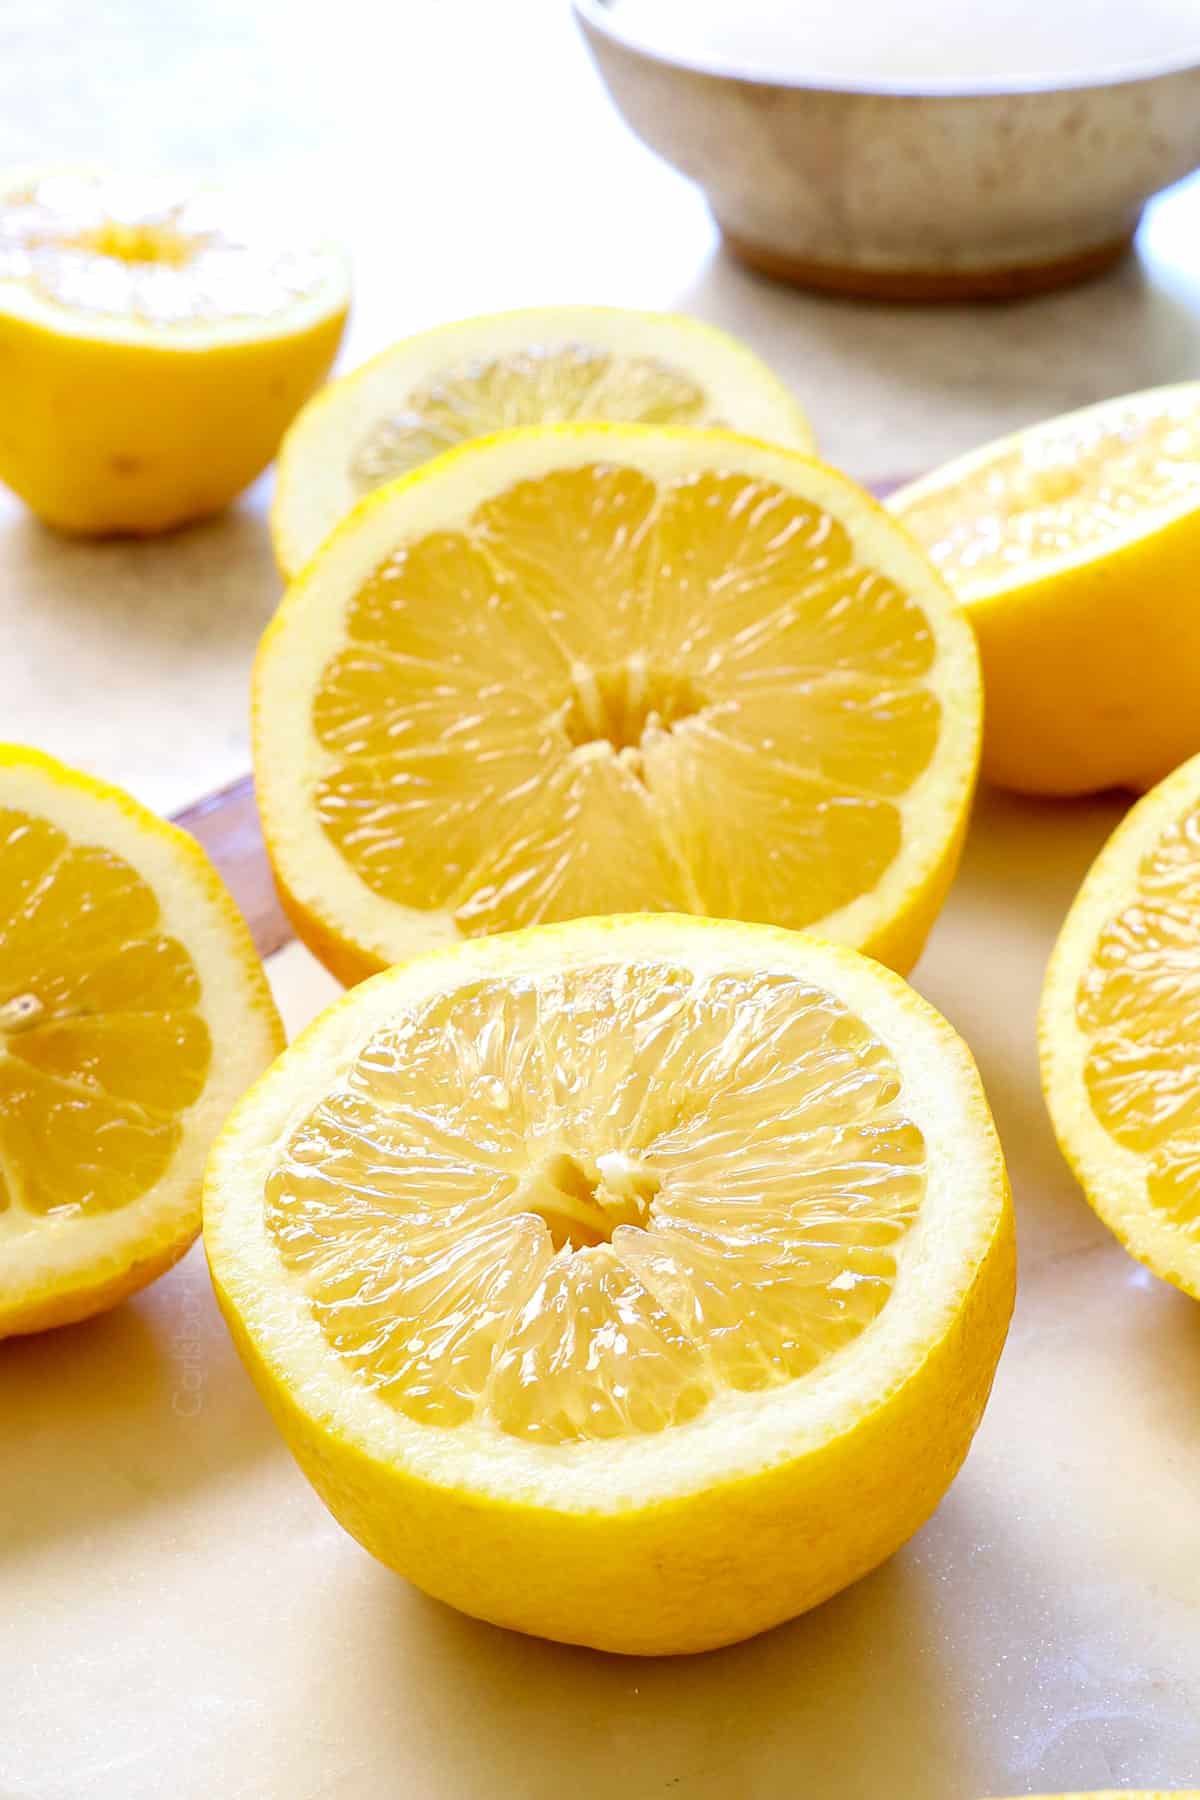 showing ingredients for lemonade:  lemons, water and sugar